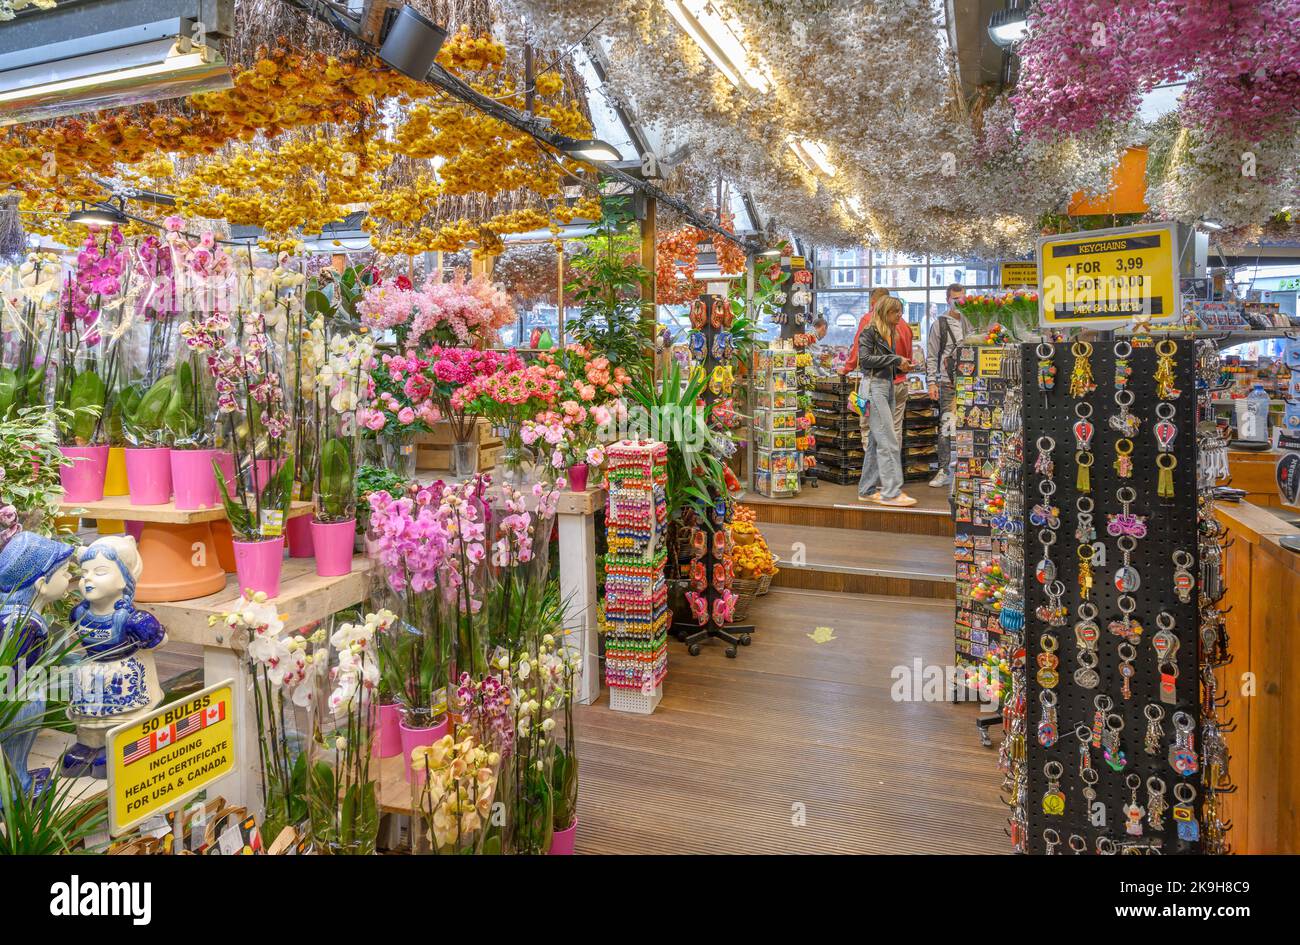 Le marché aux fleurs (Bloemenmarkt), Singel, Amsterdam, pays-Bas Banque D'Images